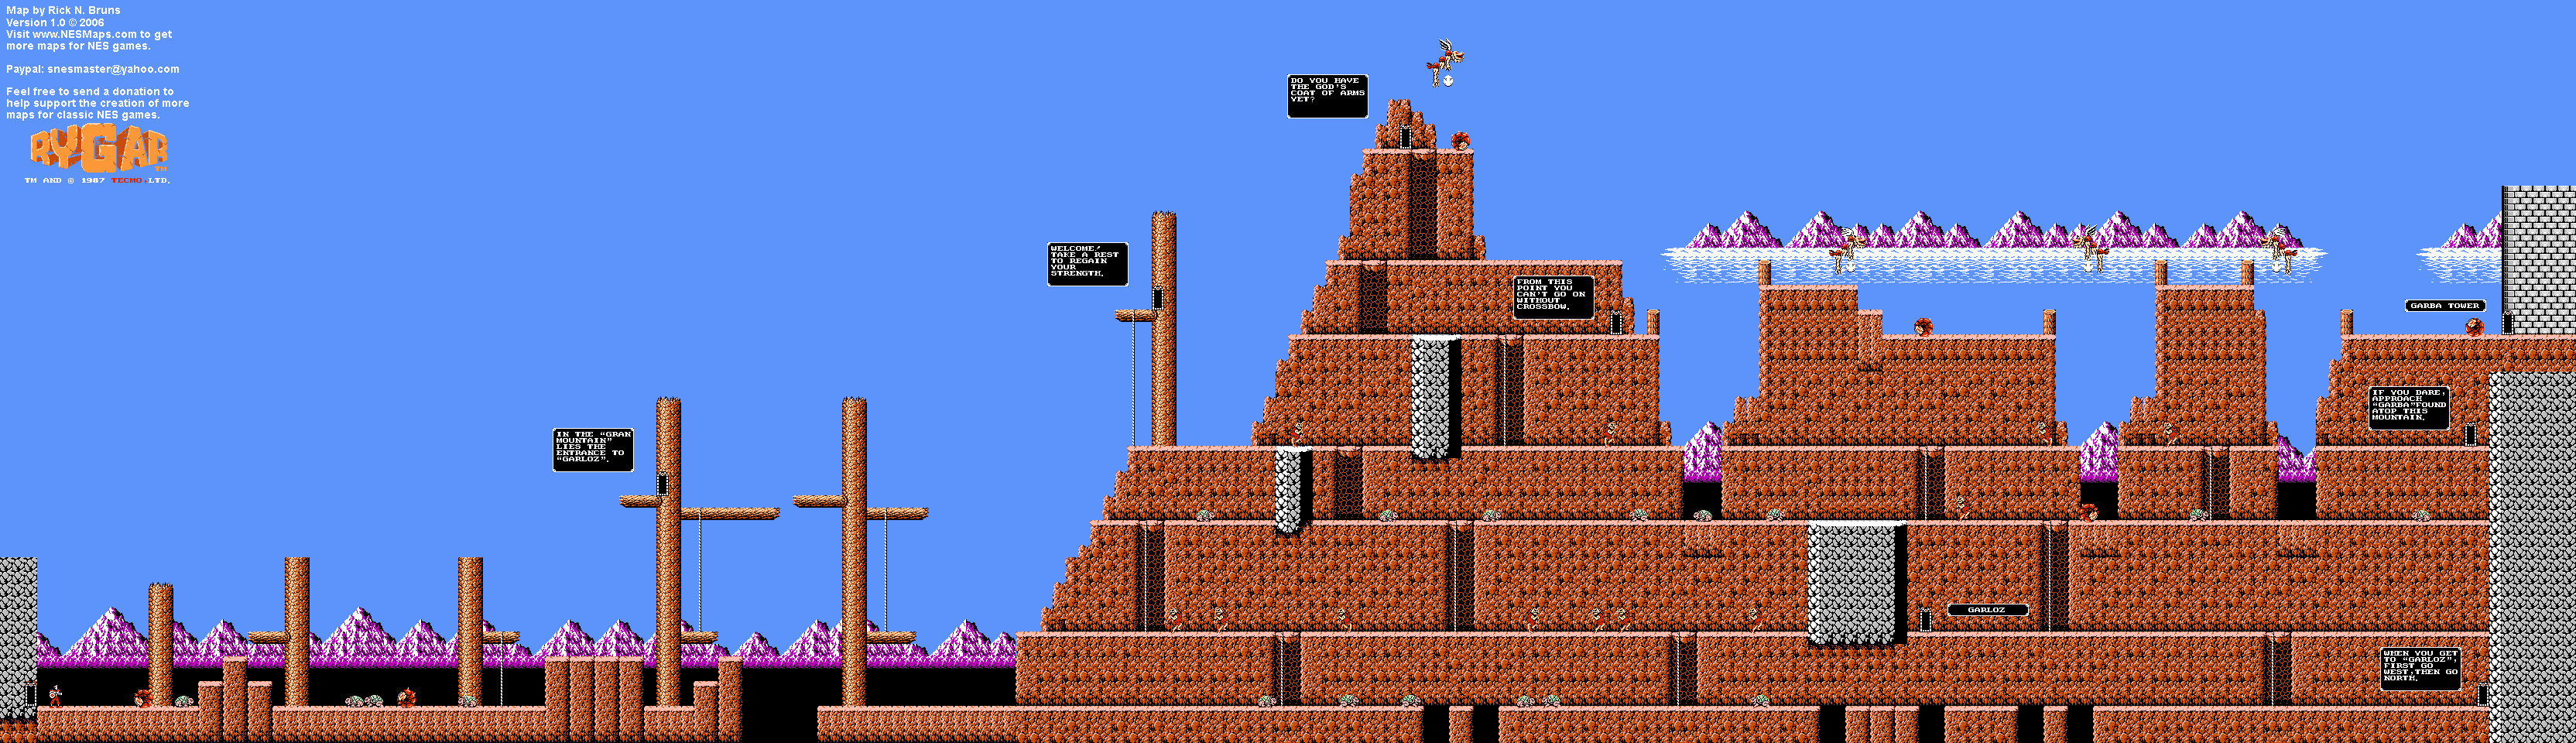 Rygar - Gran Mountain - NES Map